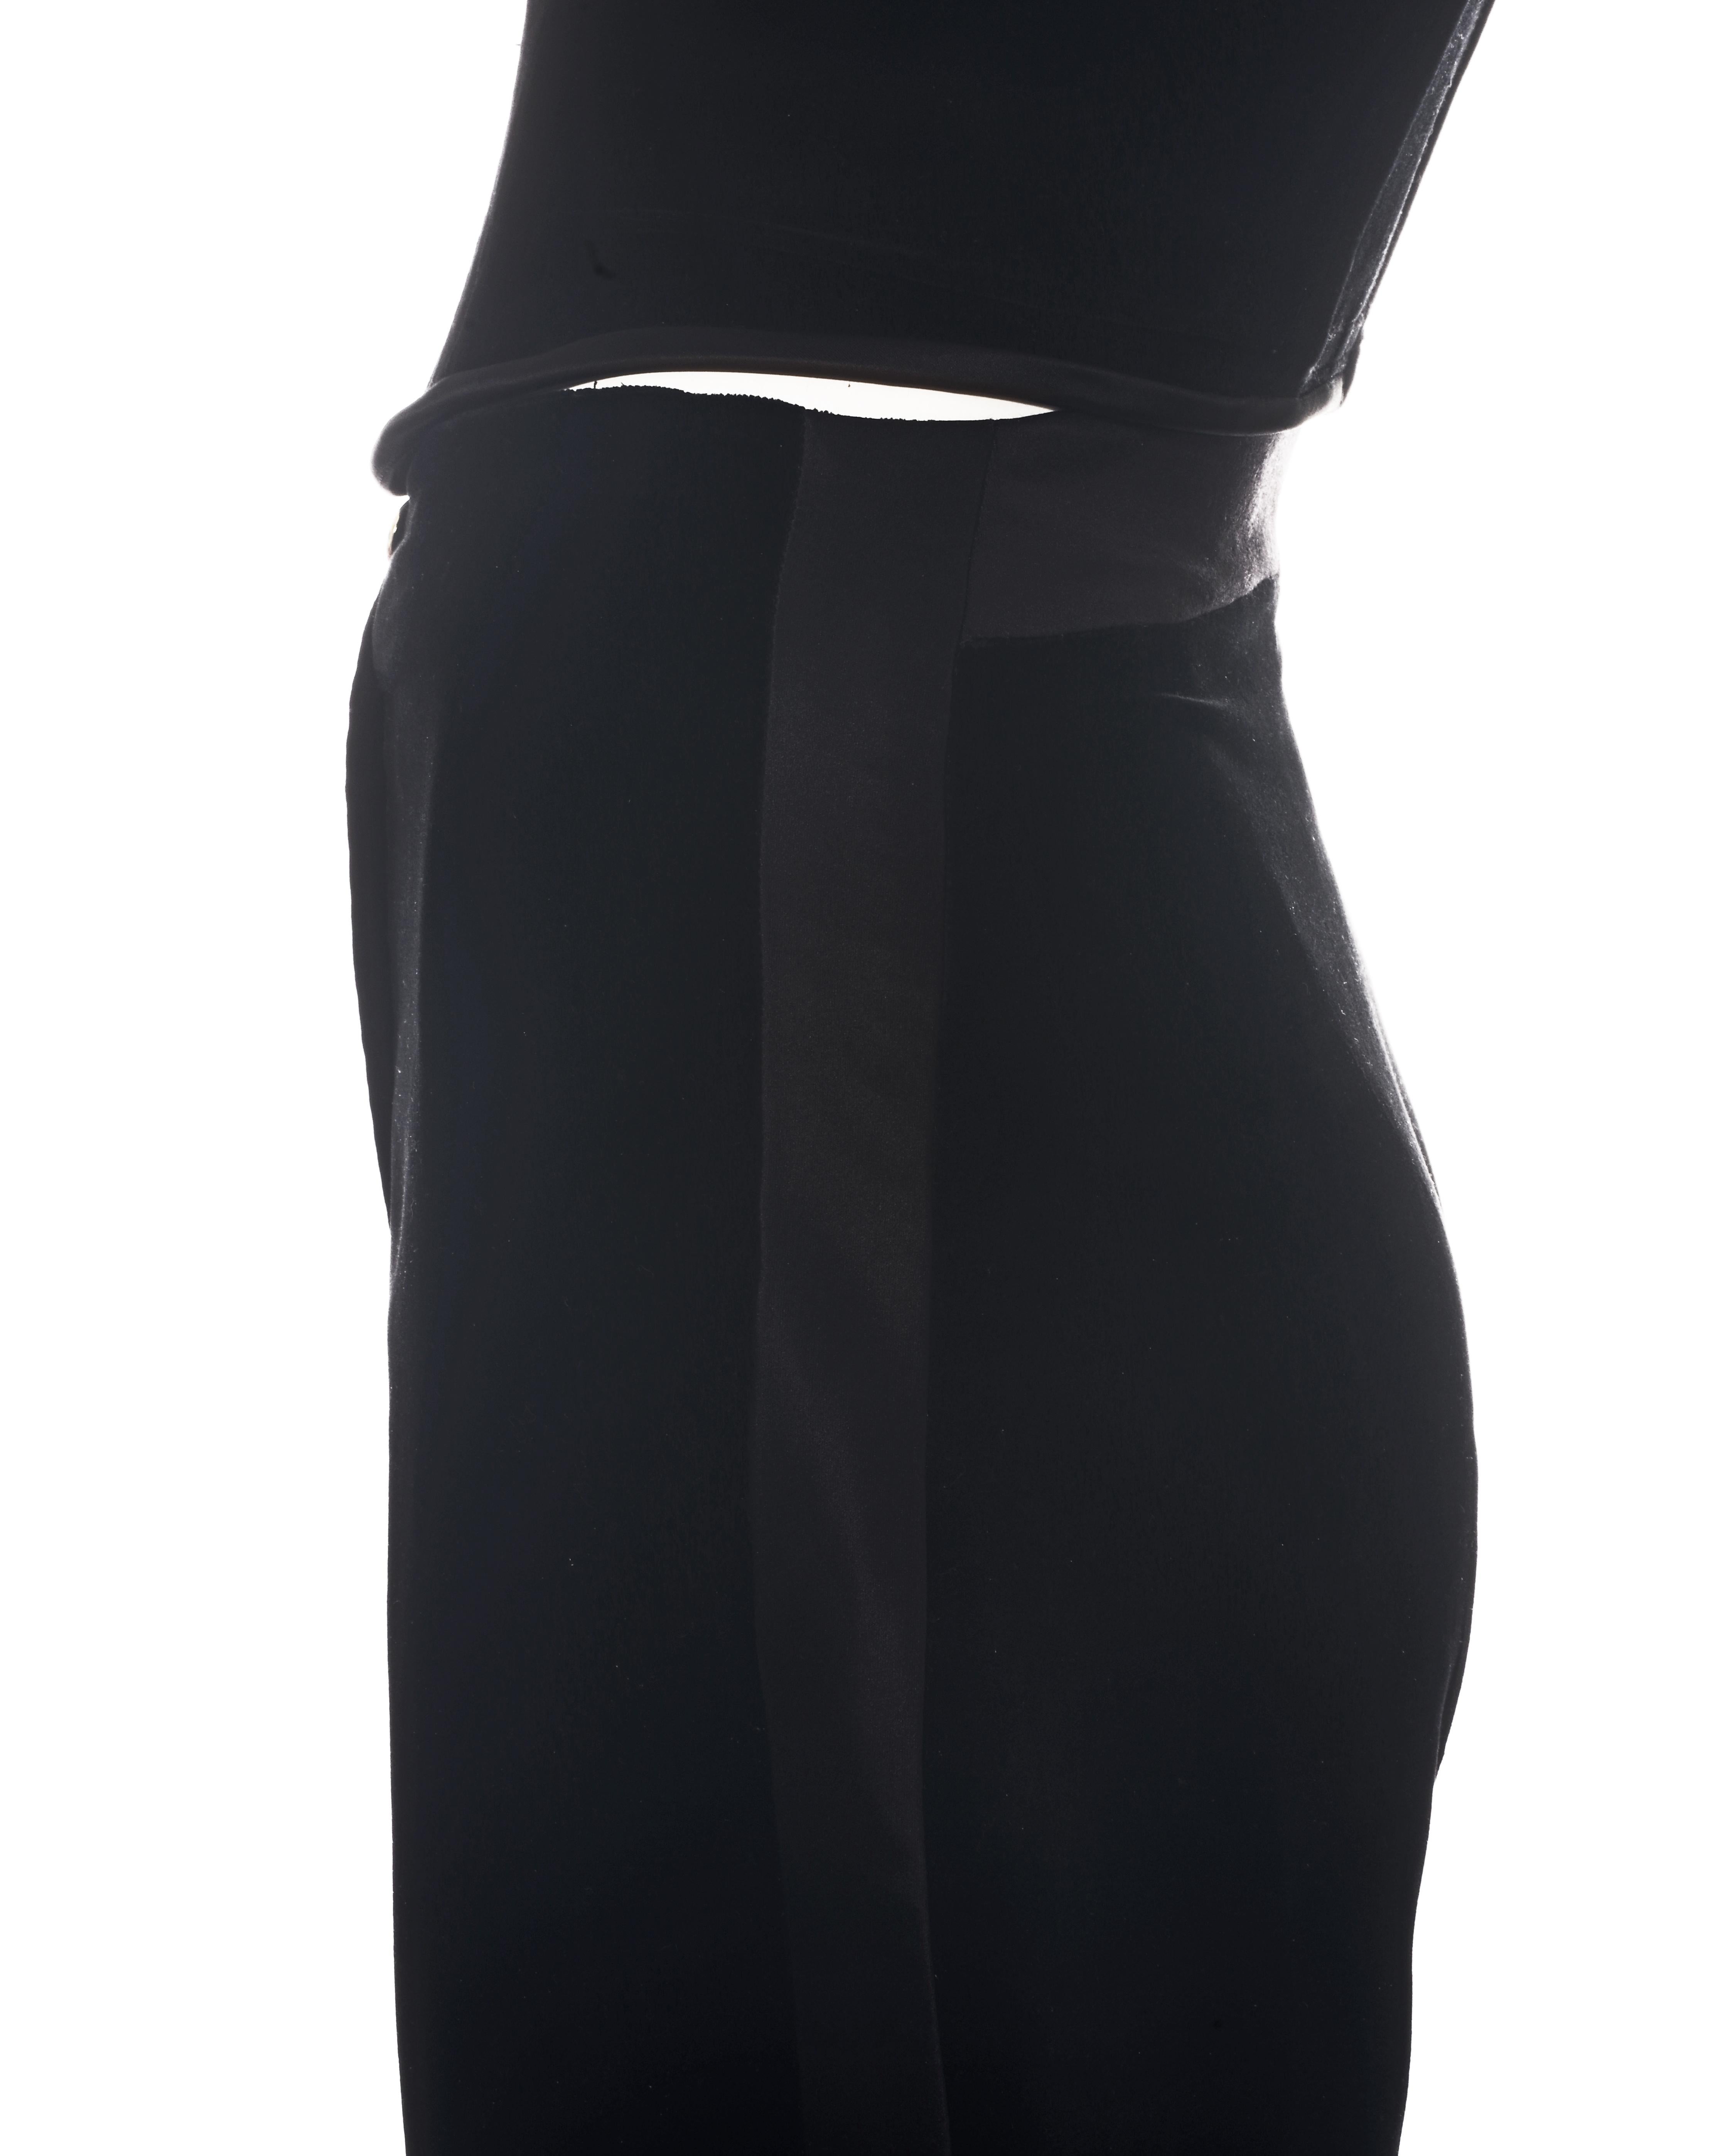 Women's Vivienne Westwood black velvet and satin corset pant suit, fw 1996